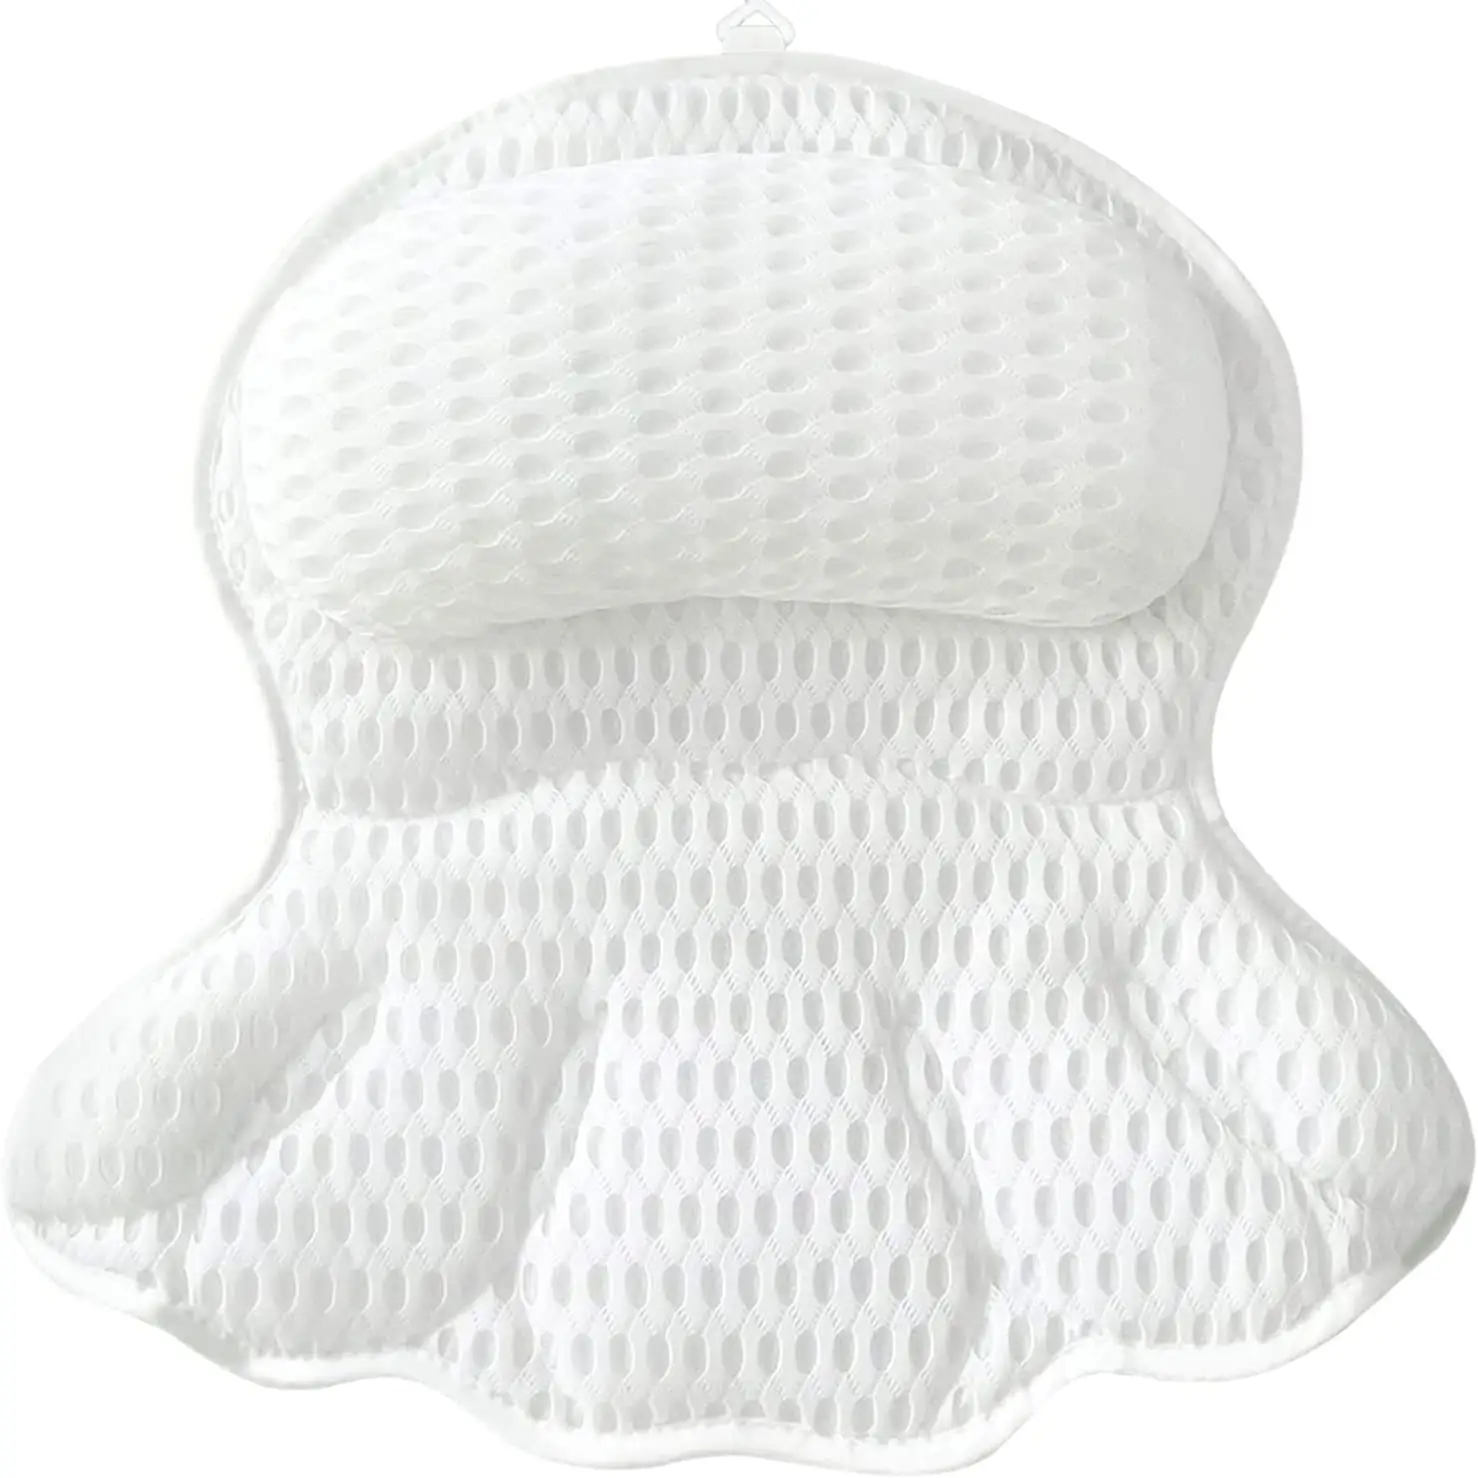 CF BBP12 vendi bene cuscino da bagno bianco cuscino per vasca da bagno cuscino da bagno antiscivolo ad asciugatura rapida all'ingrosso